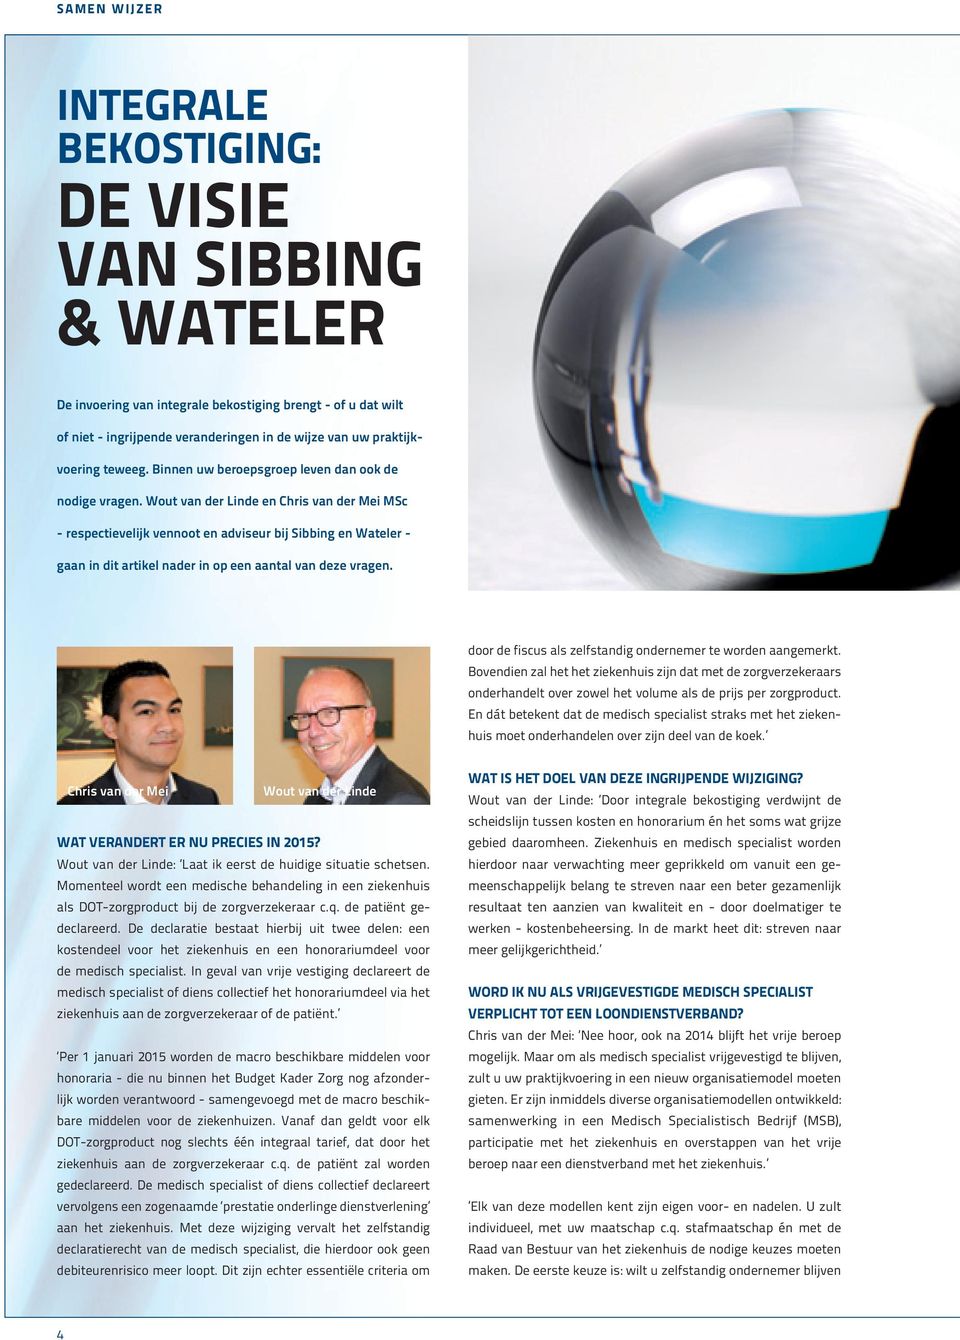 Wout van der Linde en Chris van der Mei MSc - respectievelijk vennoot en adviseur bij Sibbing en Wateler - gaan in dit artikel nader in op een aantal van deze vragen.